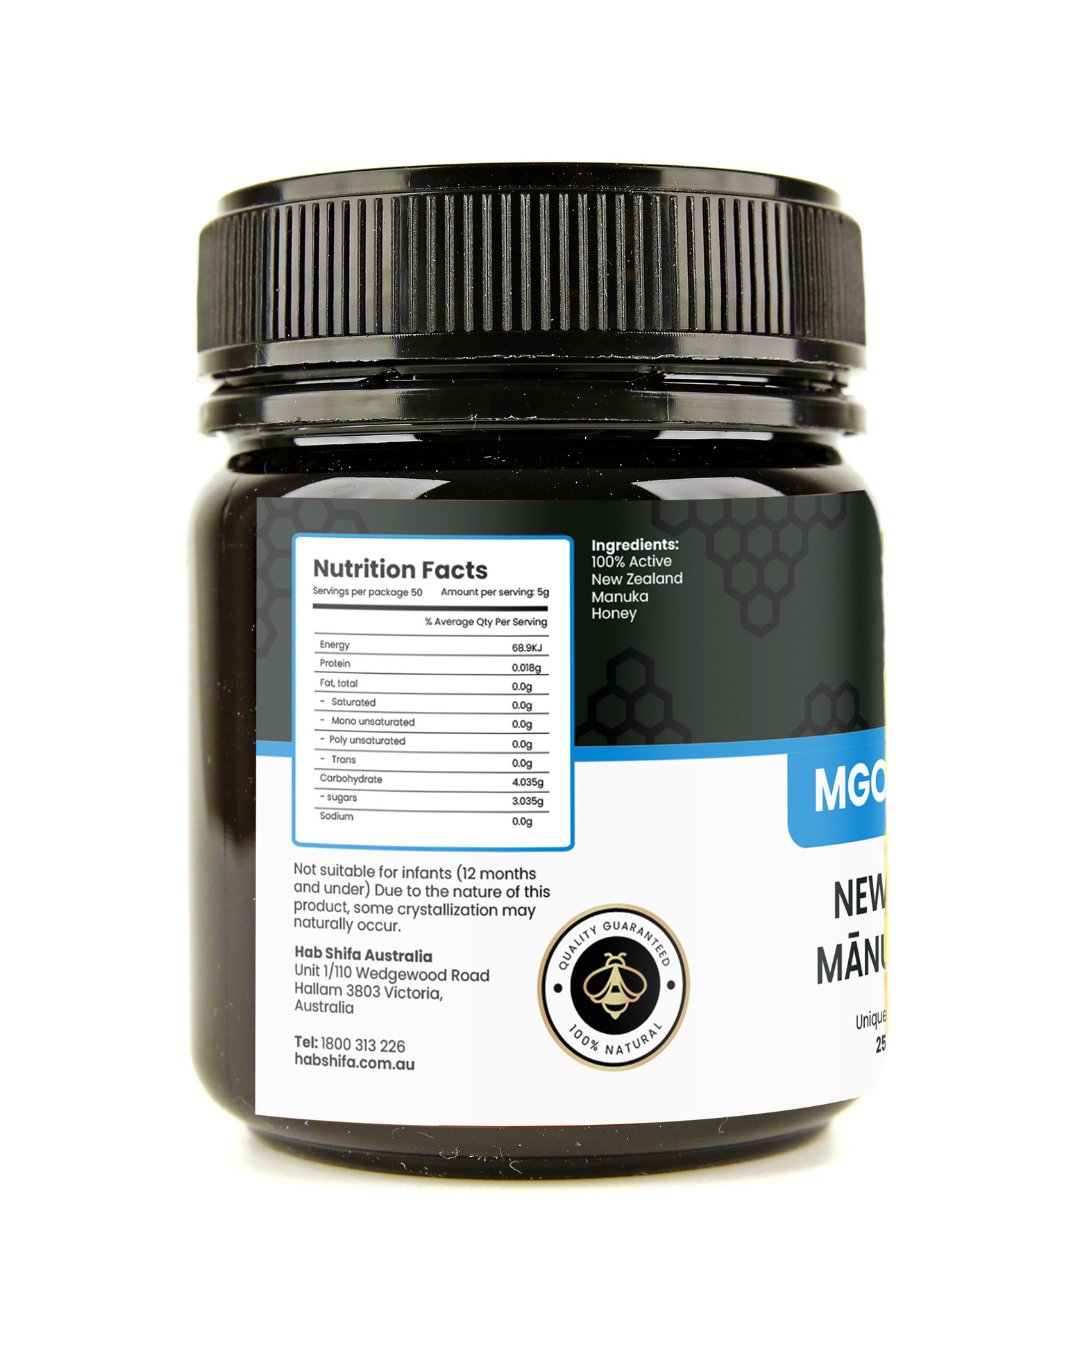 New Zealand Manuka Honey MGO100+ (UMF 5+) - Hab Shifa